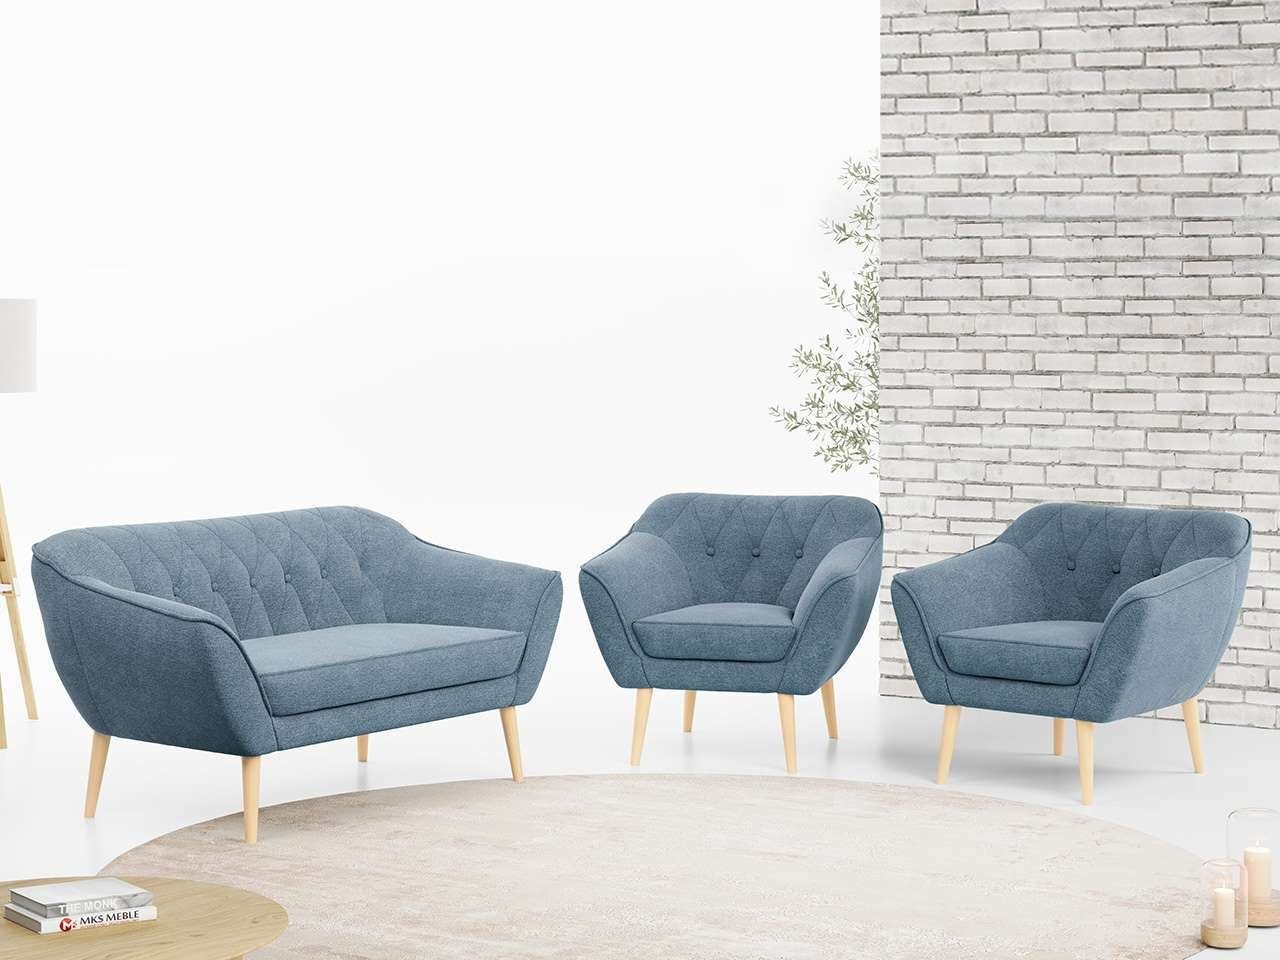 MKS MÖBEL Sofa PIRS 2 1 1, Moderne Sofa Set, Skandinavische Deko, Pirs Loungesofa und Zwei Sessels Blau Matana